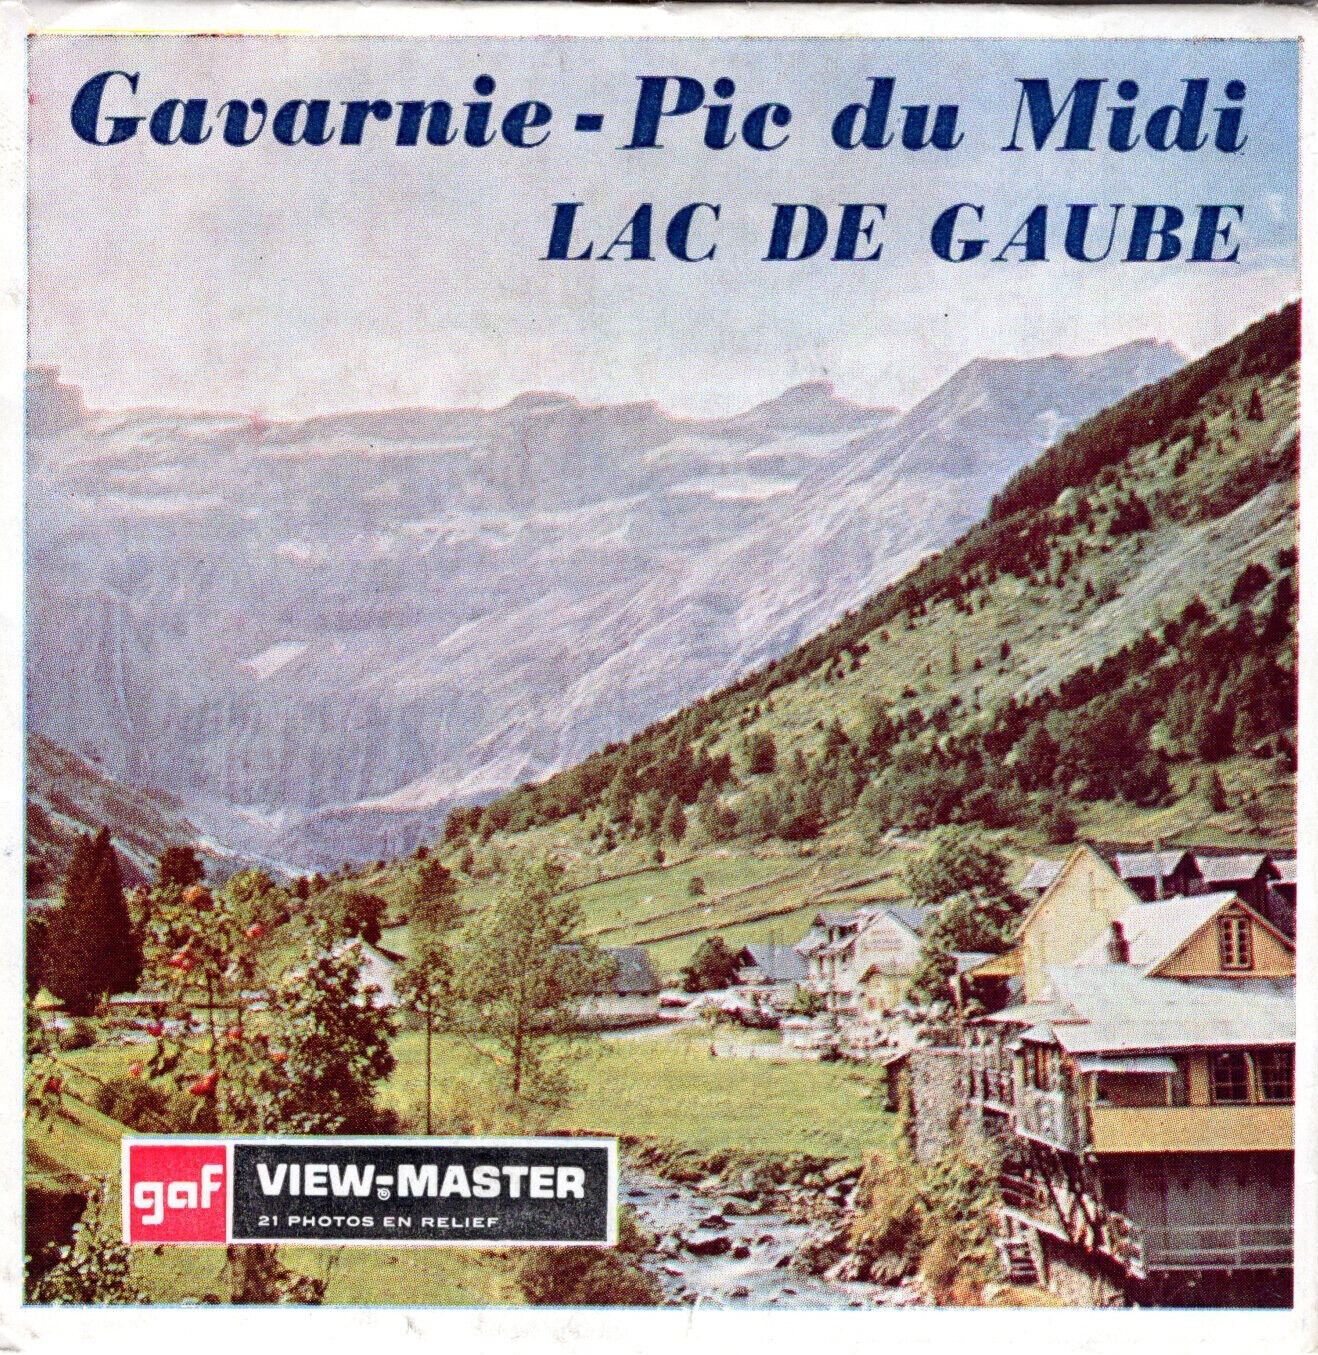 view-master Gavarnie Pic du Midi Lac De Gaube C 188 F